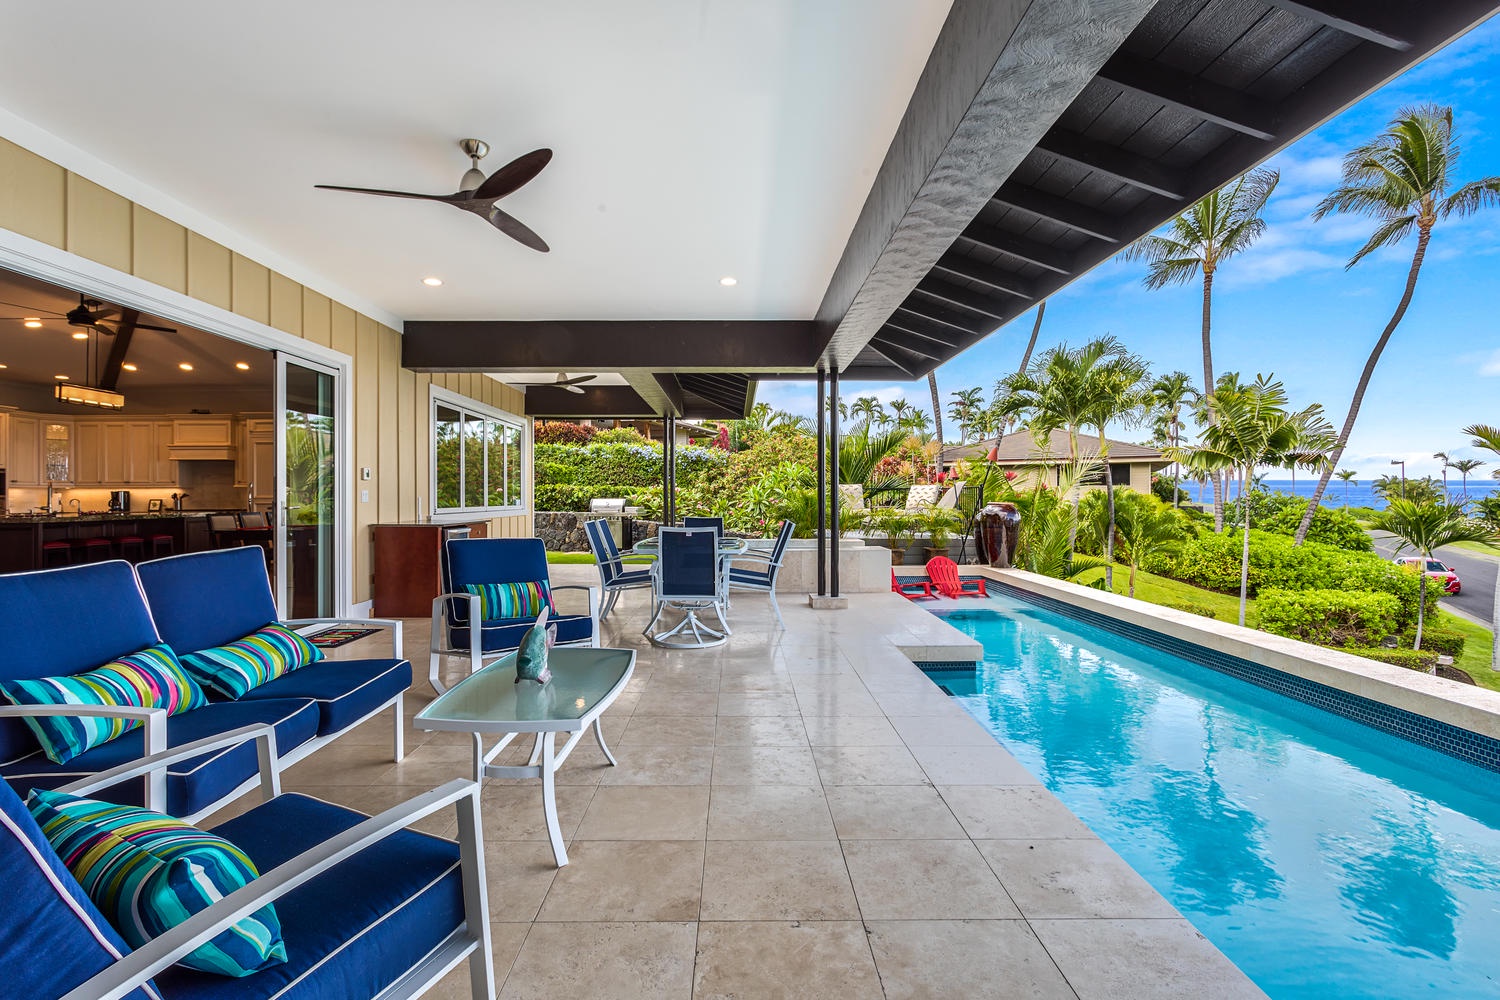 Kailua Kona Vacation Rentals, Ohana le'ale'a - Lanai and private pool